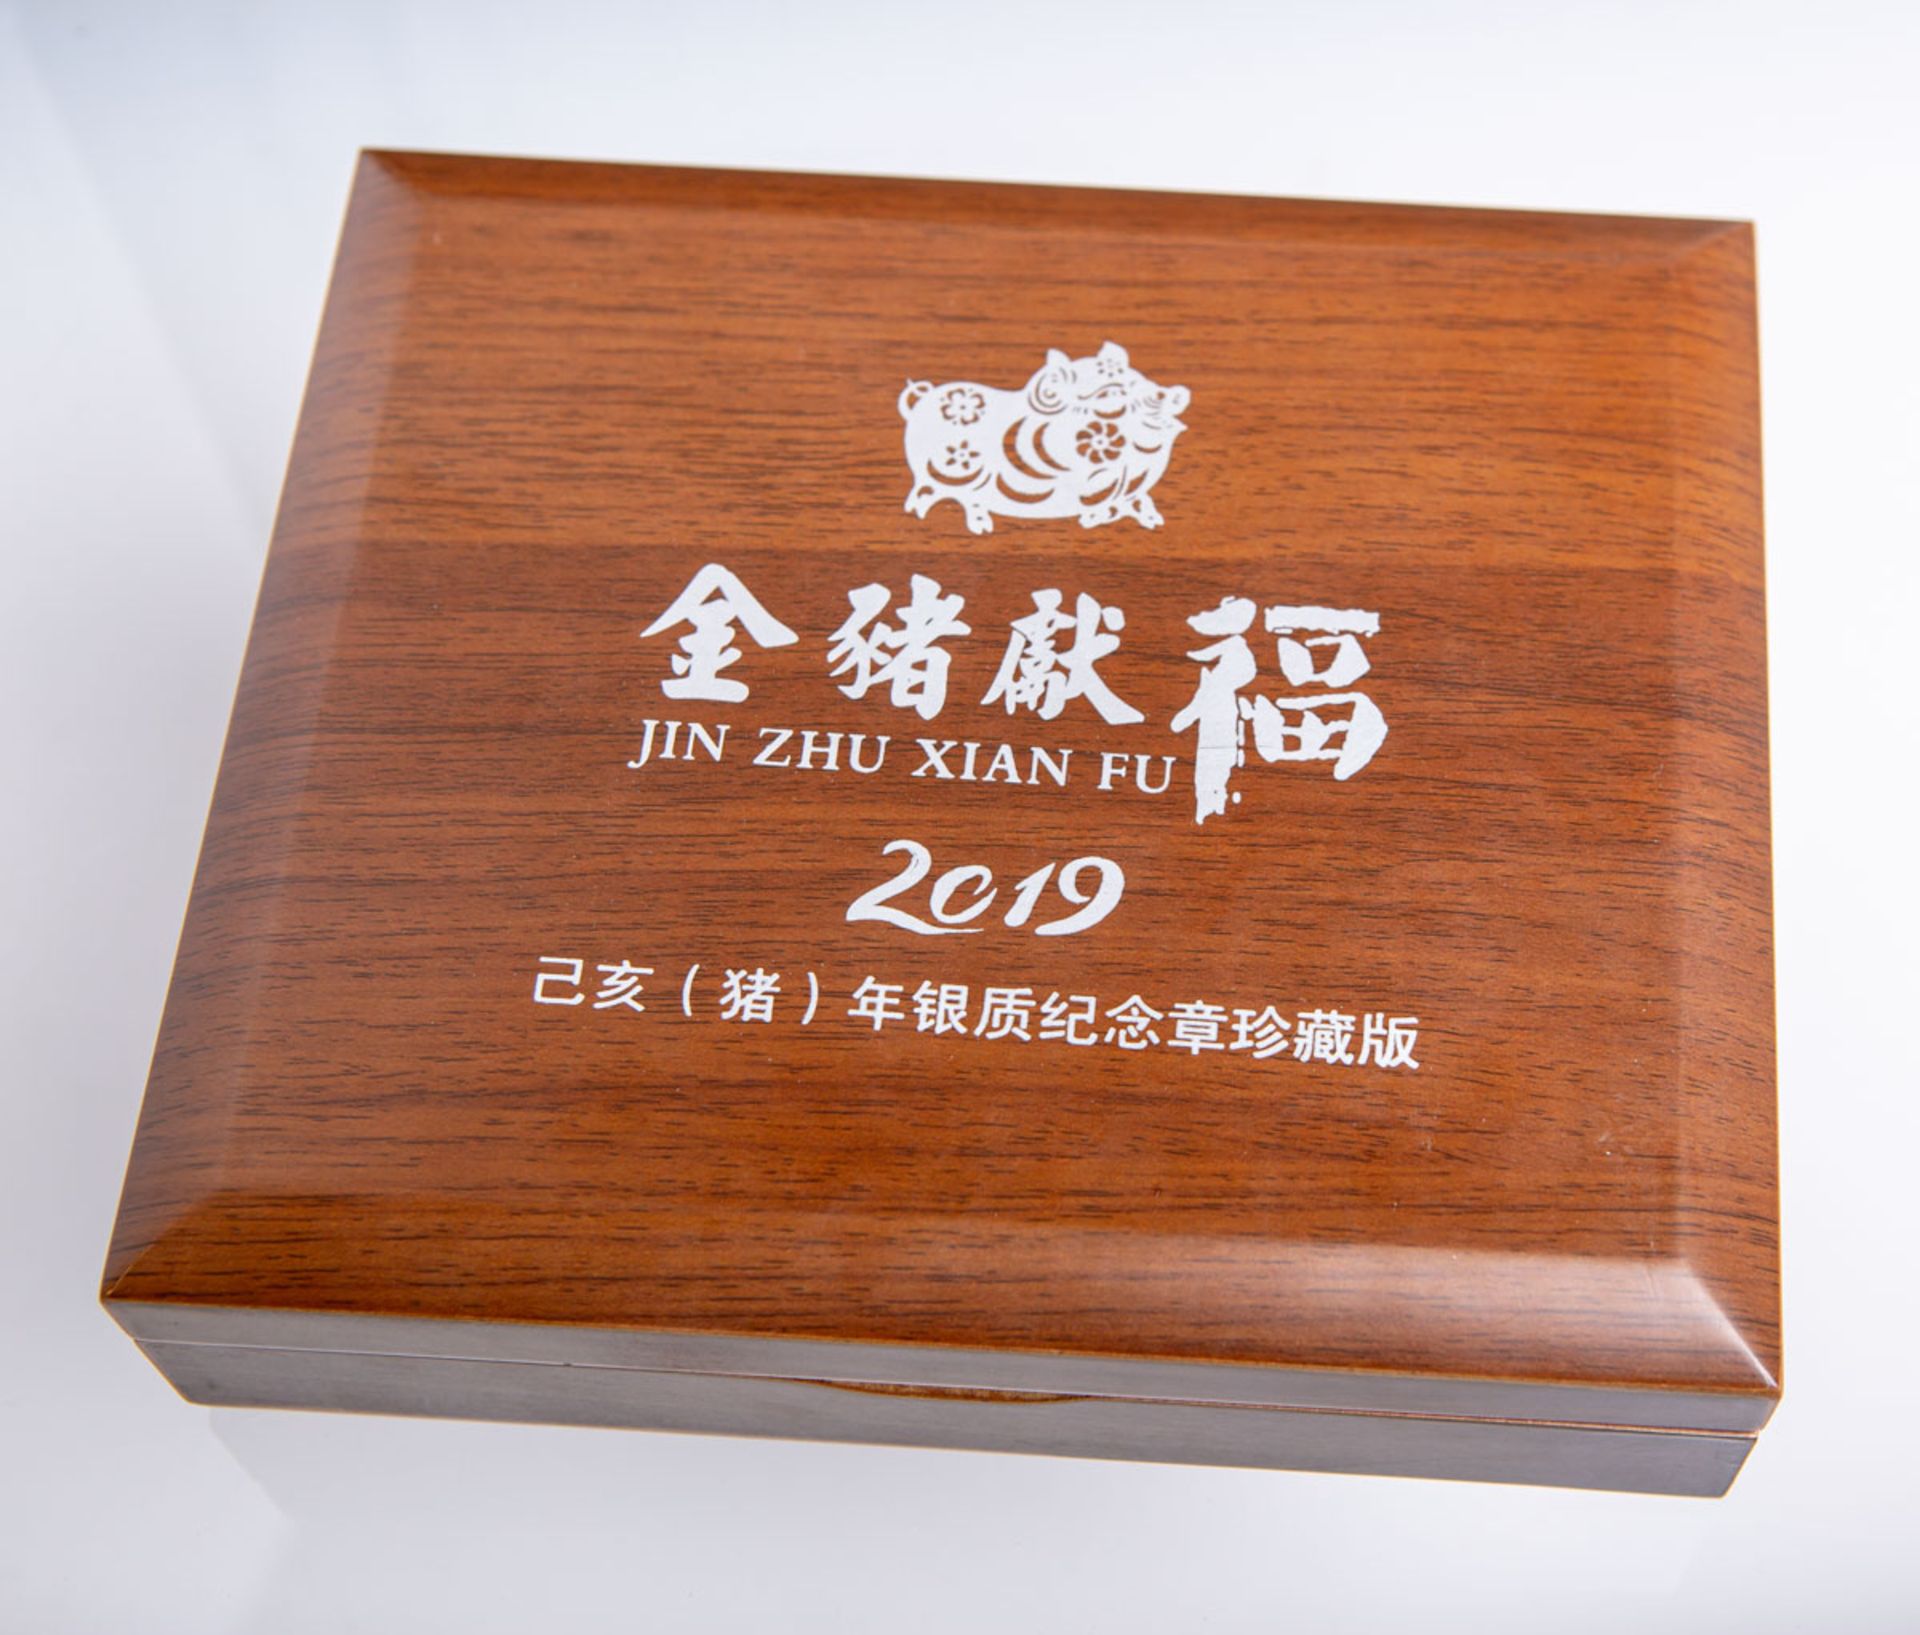 1-kg Silbermünze "Jin Zu Xian Fu" (China, 2019) - Bild 2 aus 2